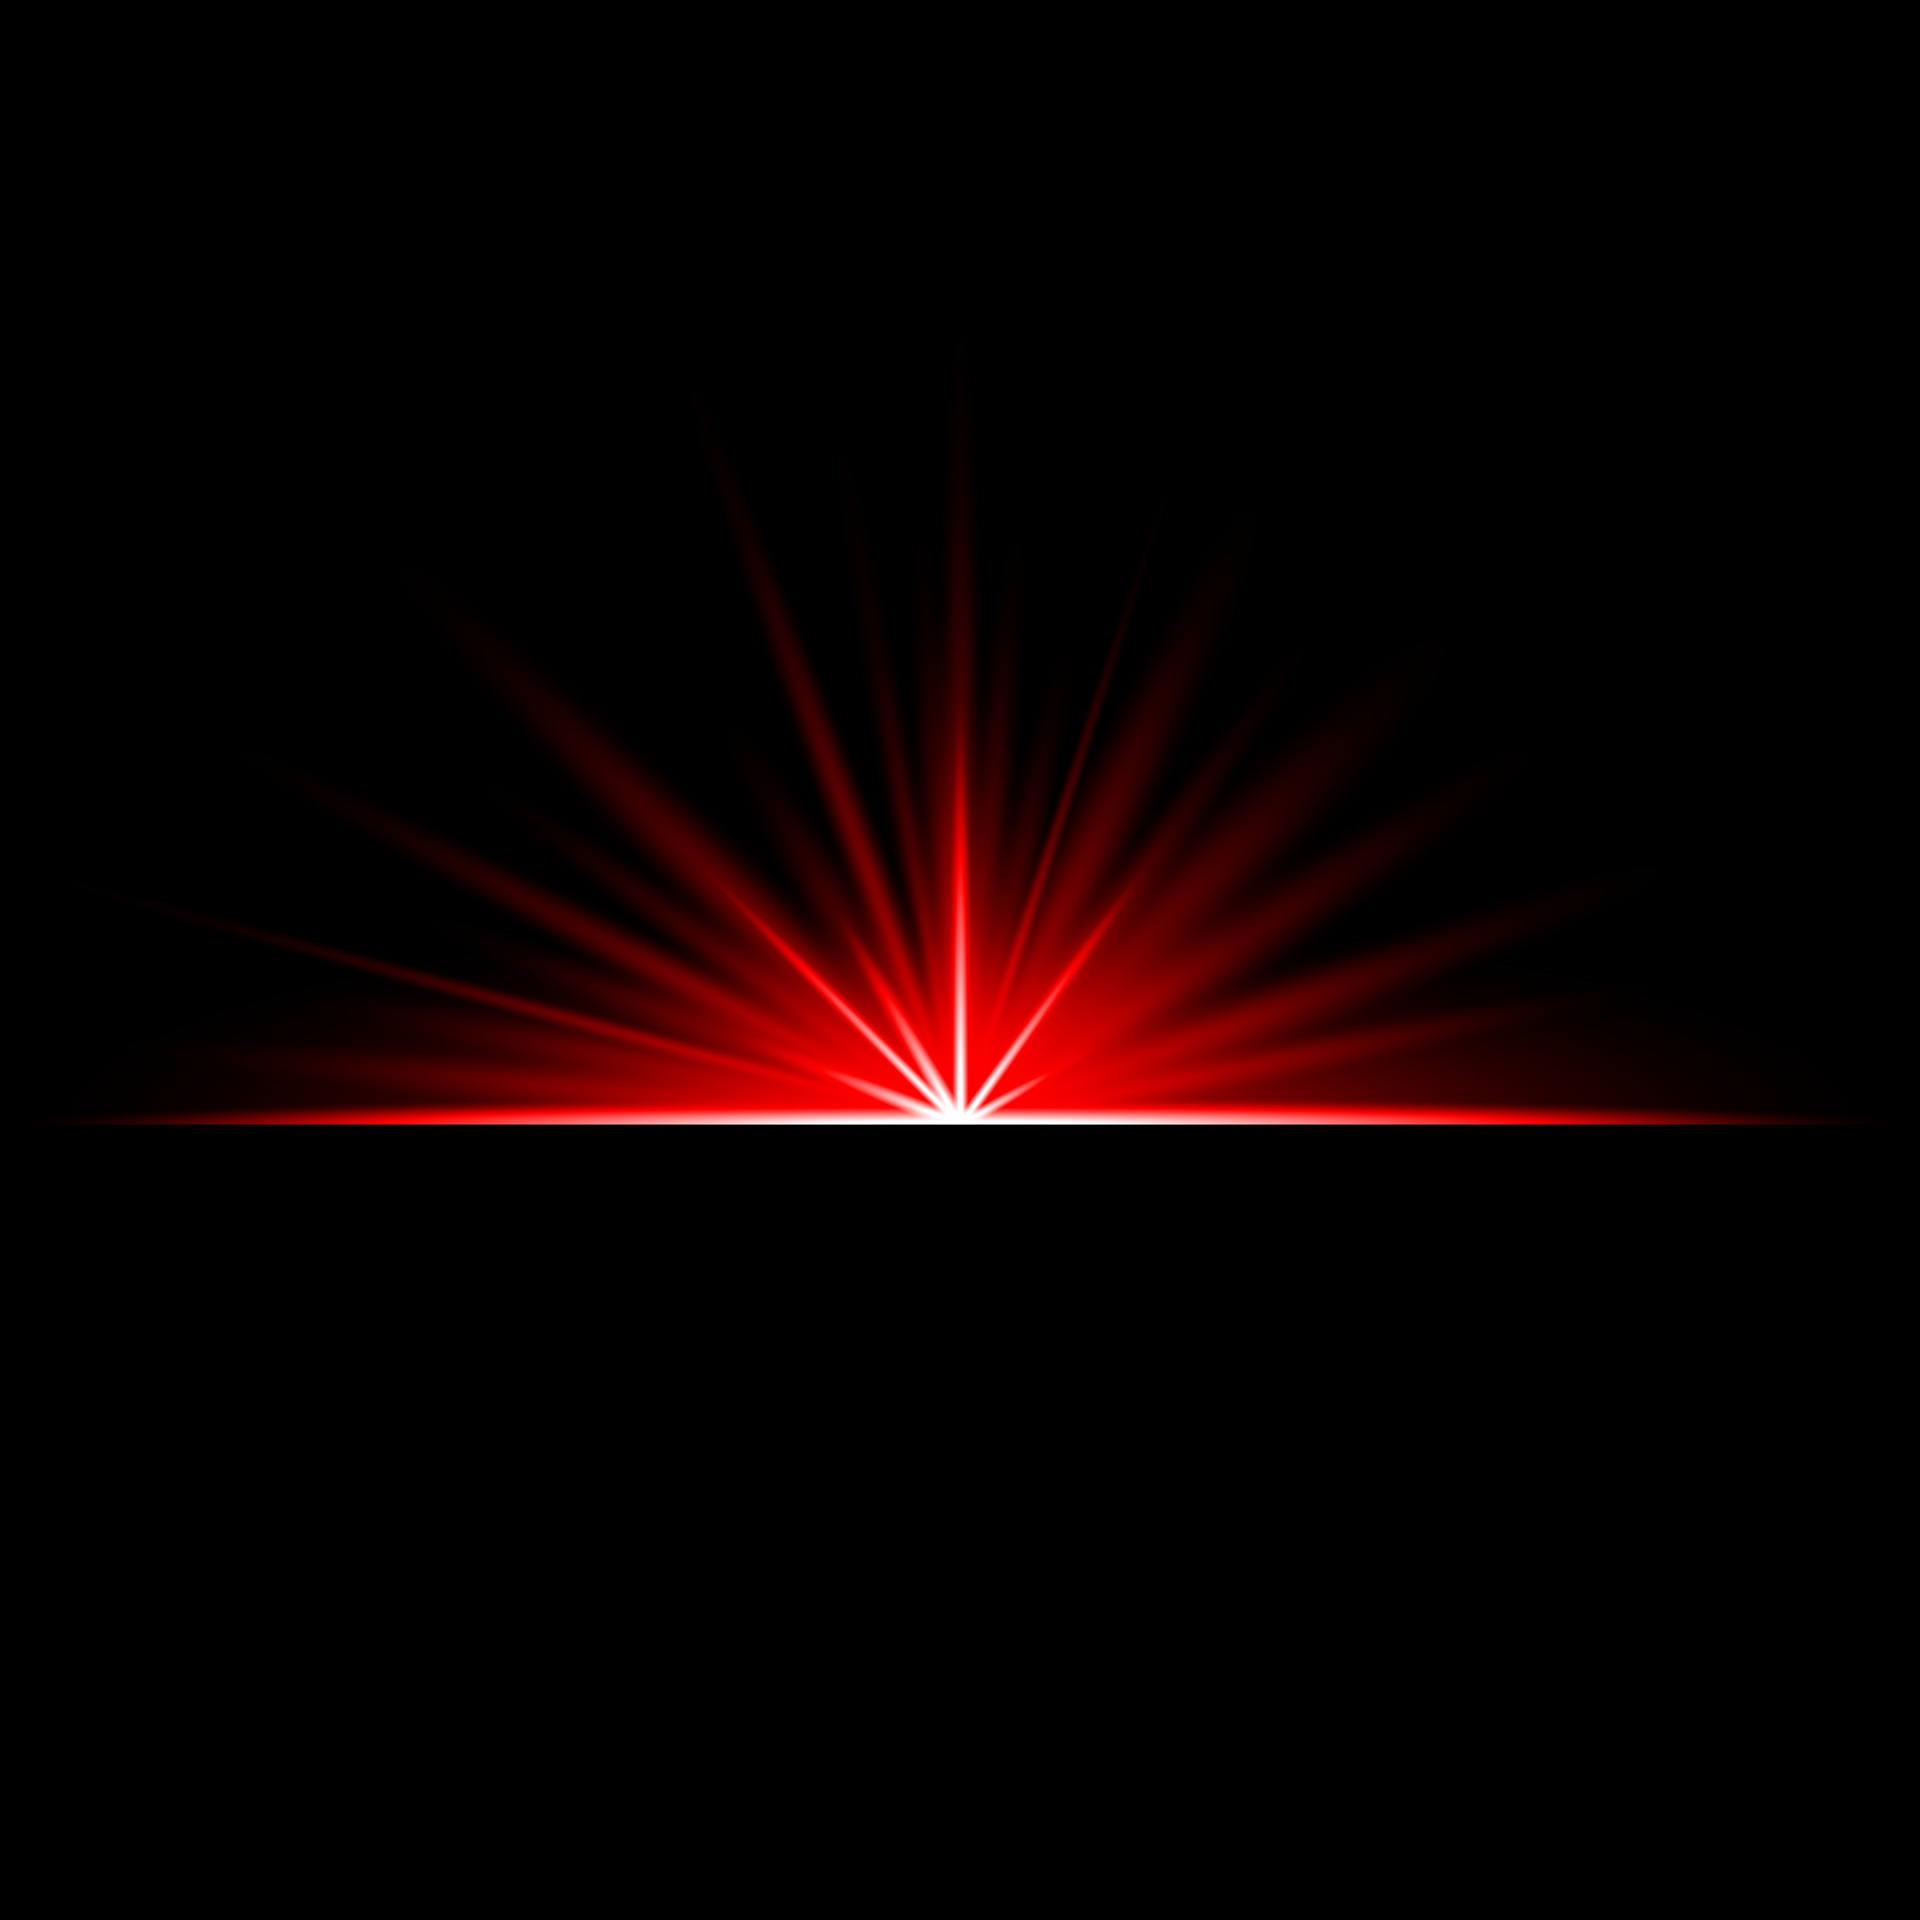 enkemand Ledig Vandt Lens Flare Red glow light ray effect illuminated 4939938 Vector Art at  Vecteezy